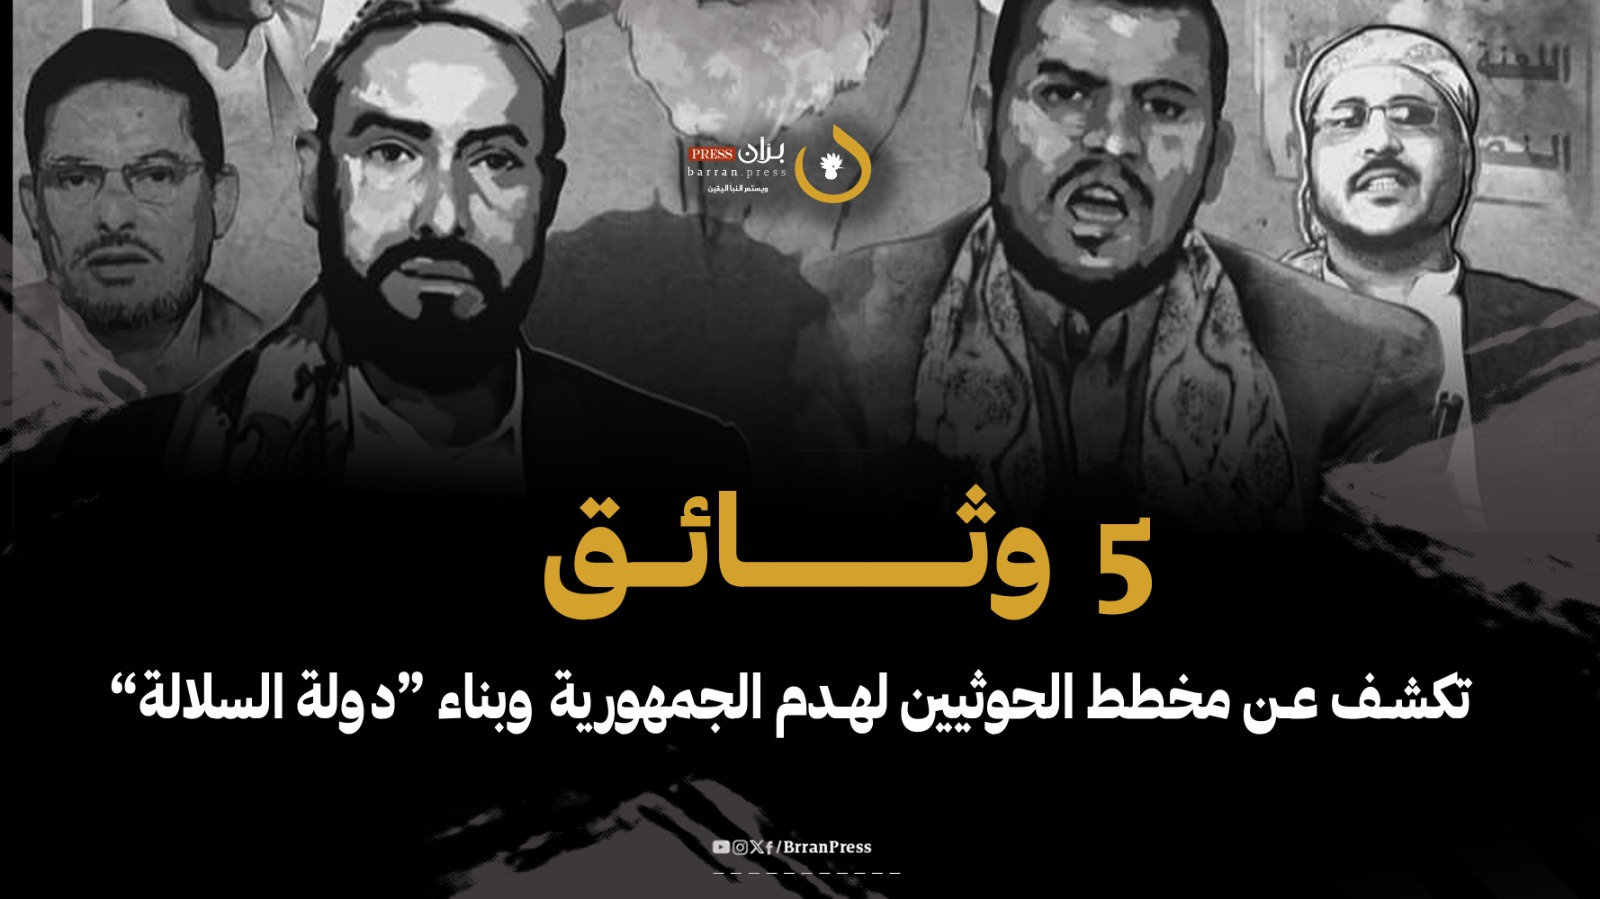  مشروع الحوثيين في إحياء الإمامة وتغيير الهوية قراءة سياسية في 5 وثائق حوثية (حلقة1)